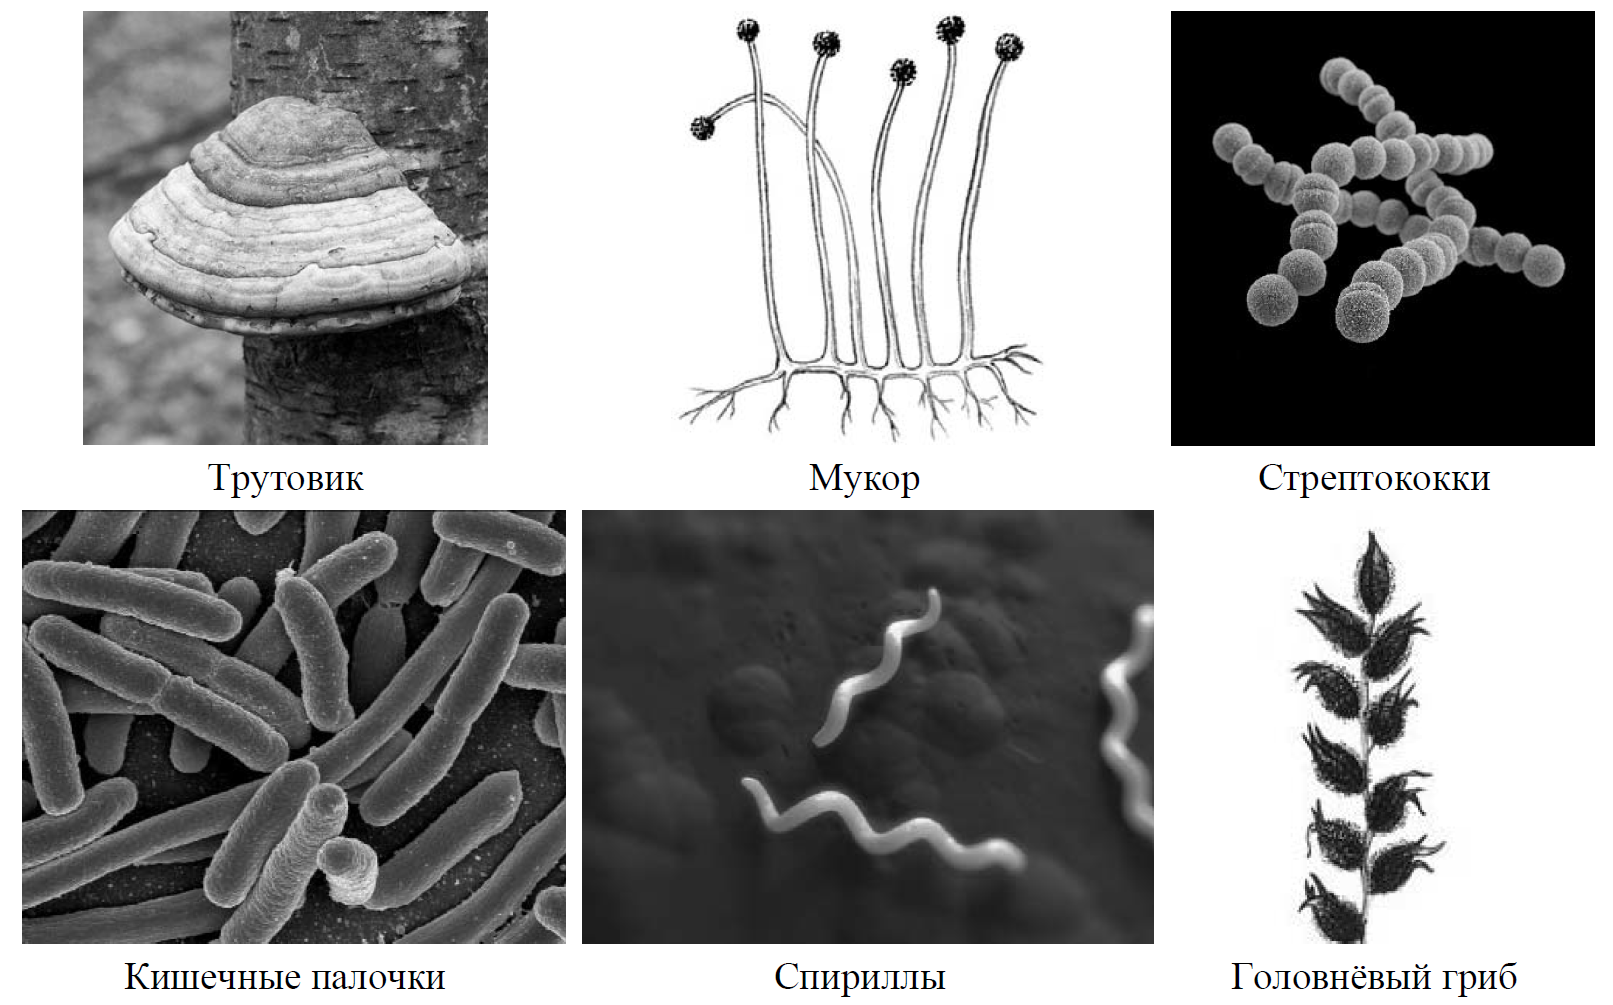 Рассмотрите изображение шести организмов впр